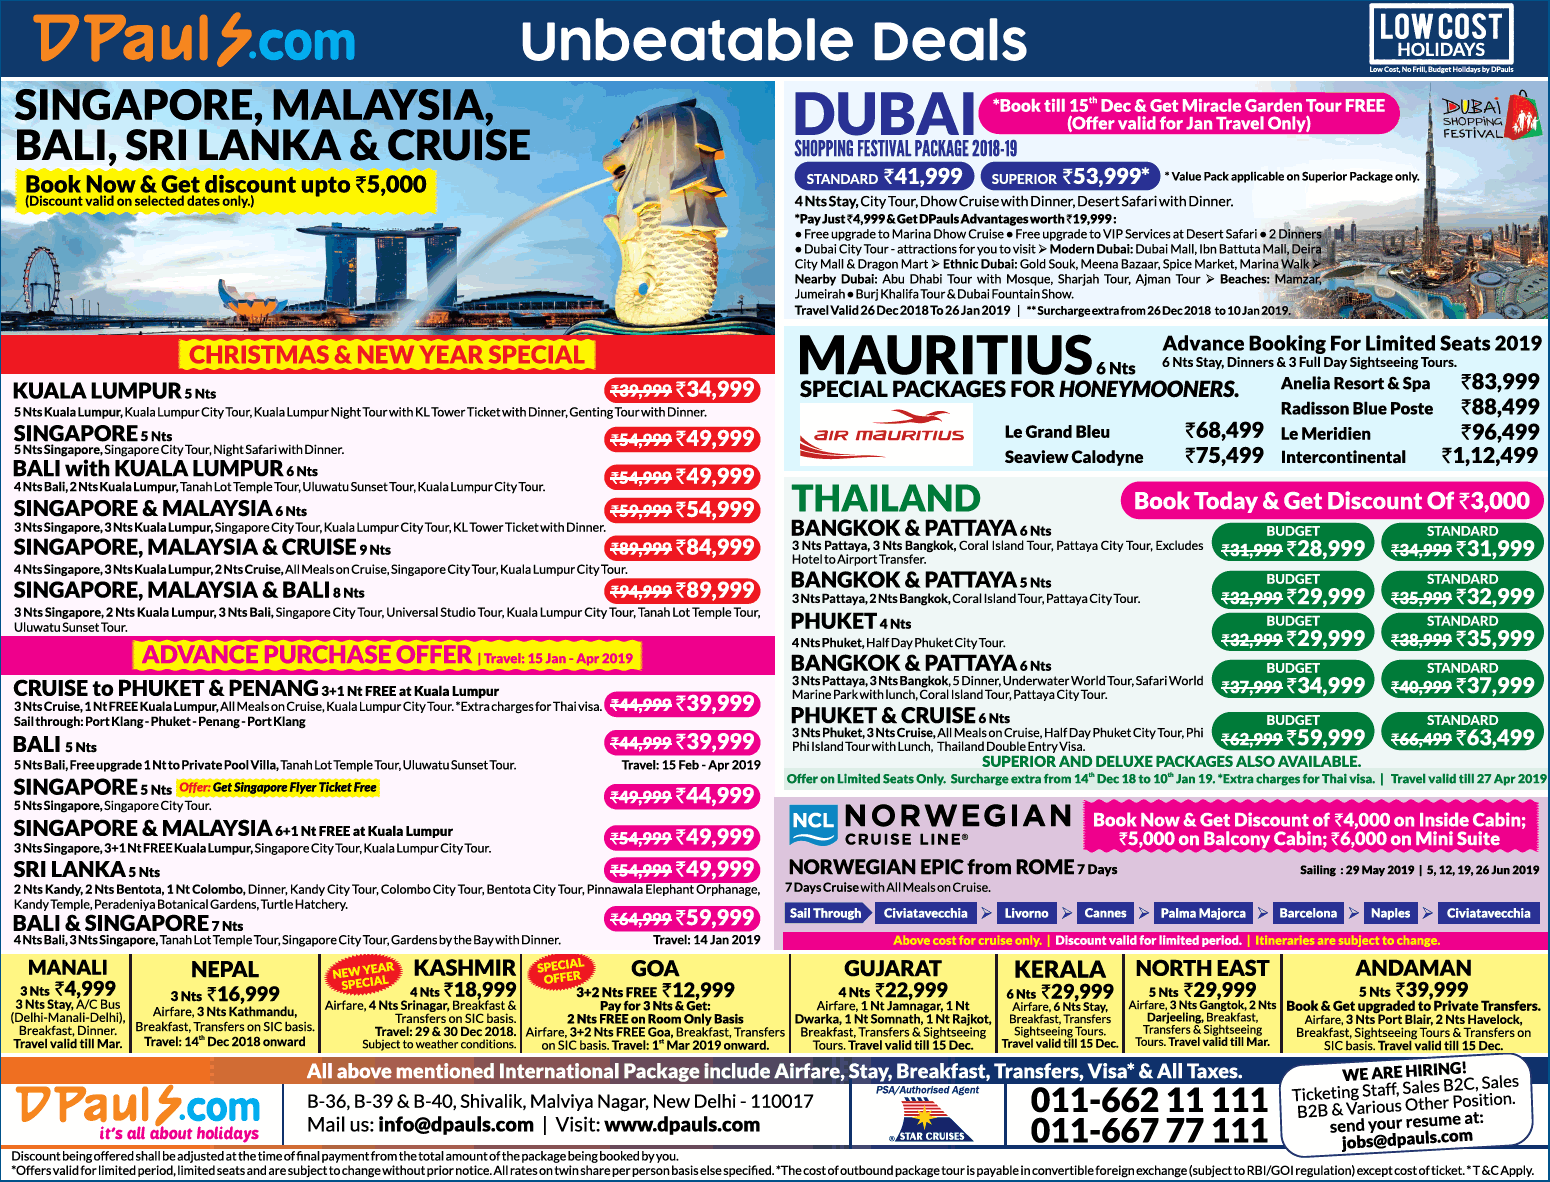 dpauls-com-unbeatable-deals-ad-delhi-times-04-12-2018.png